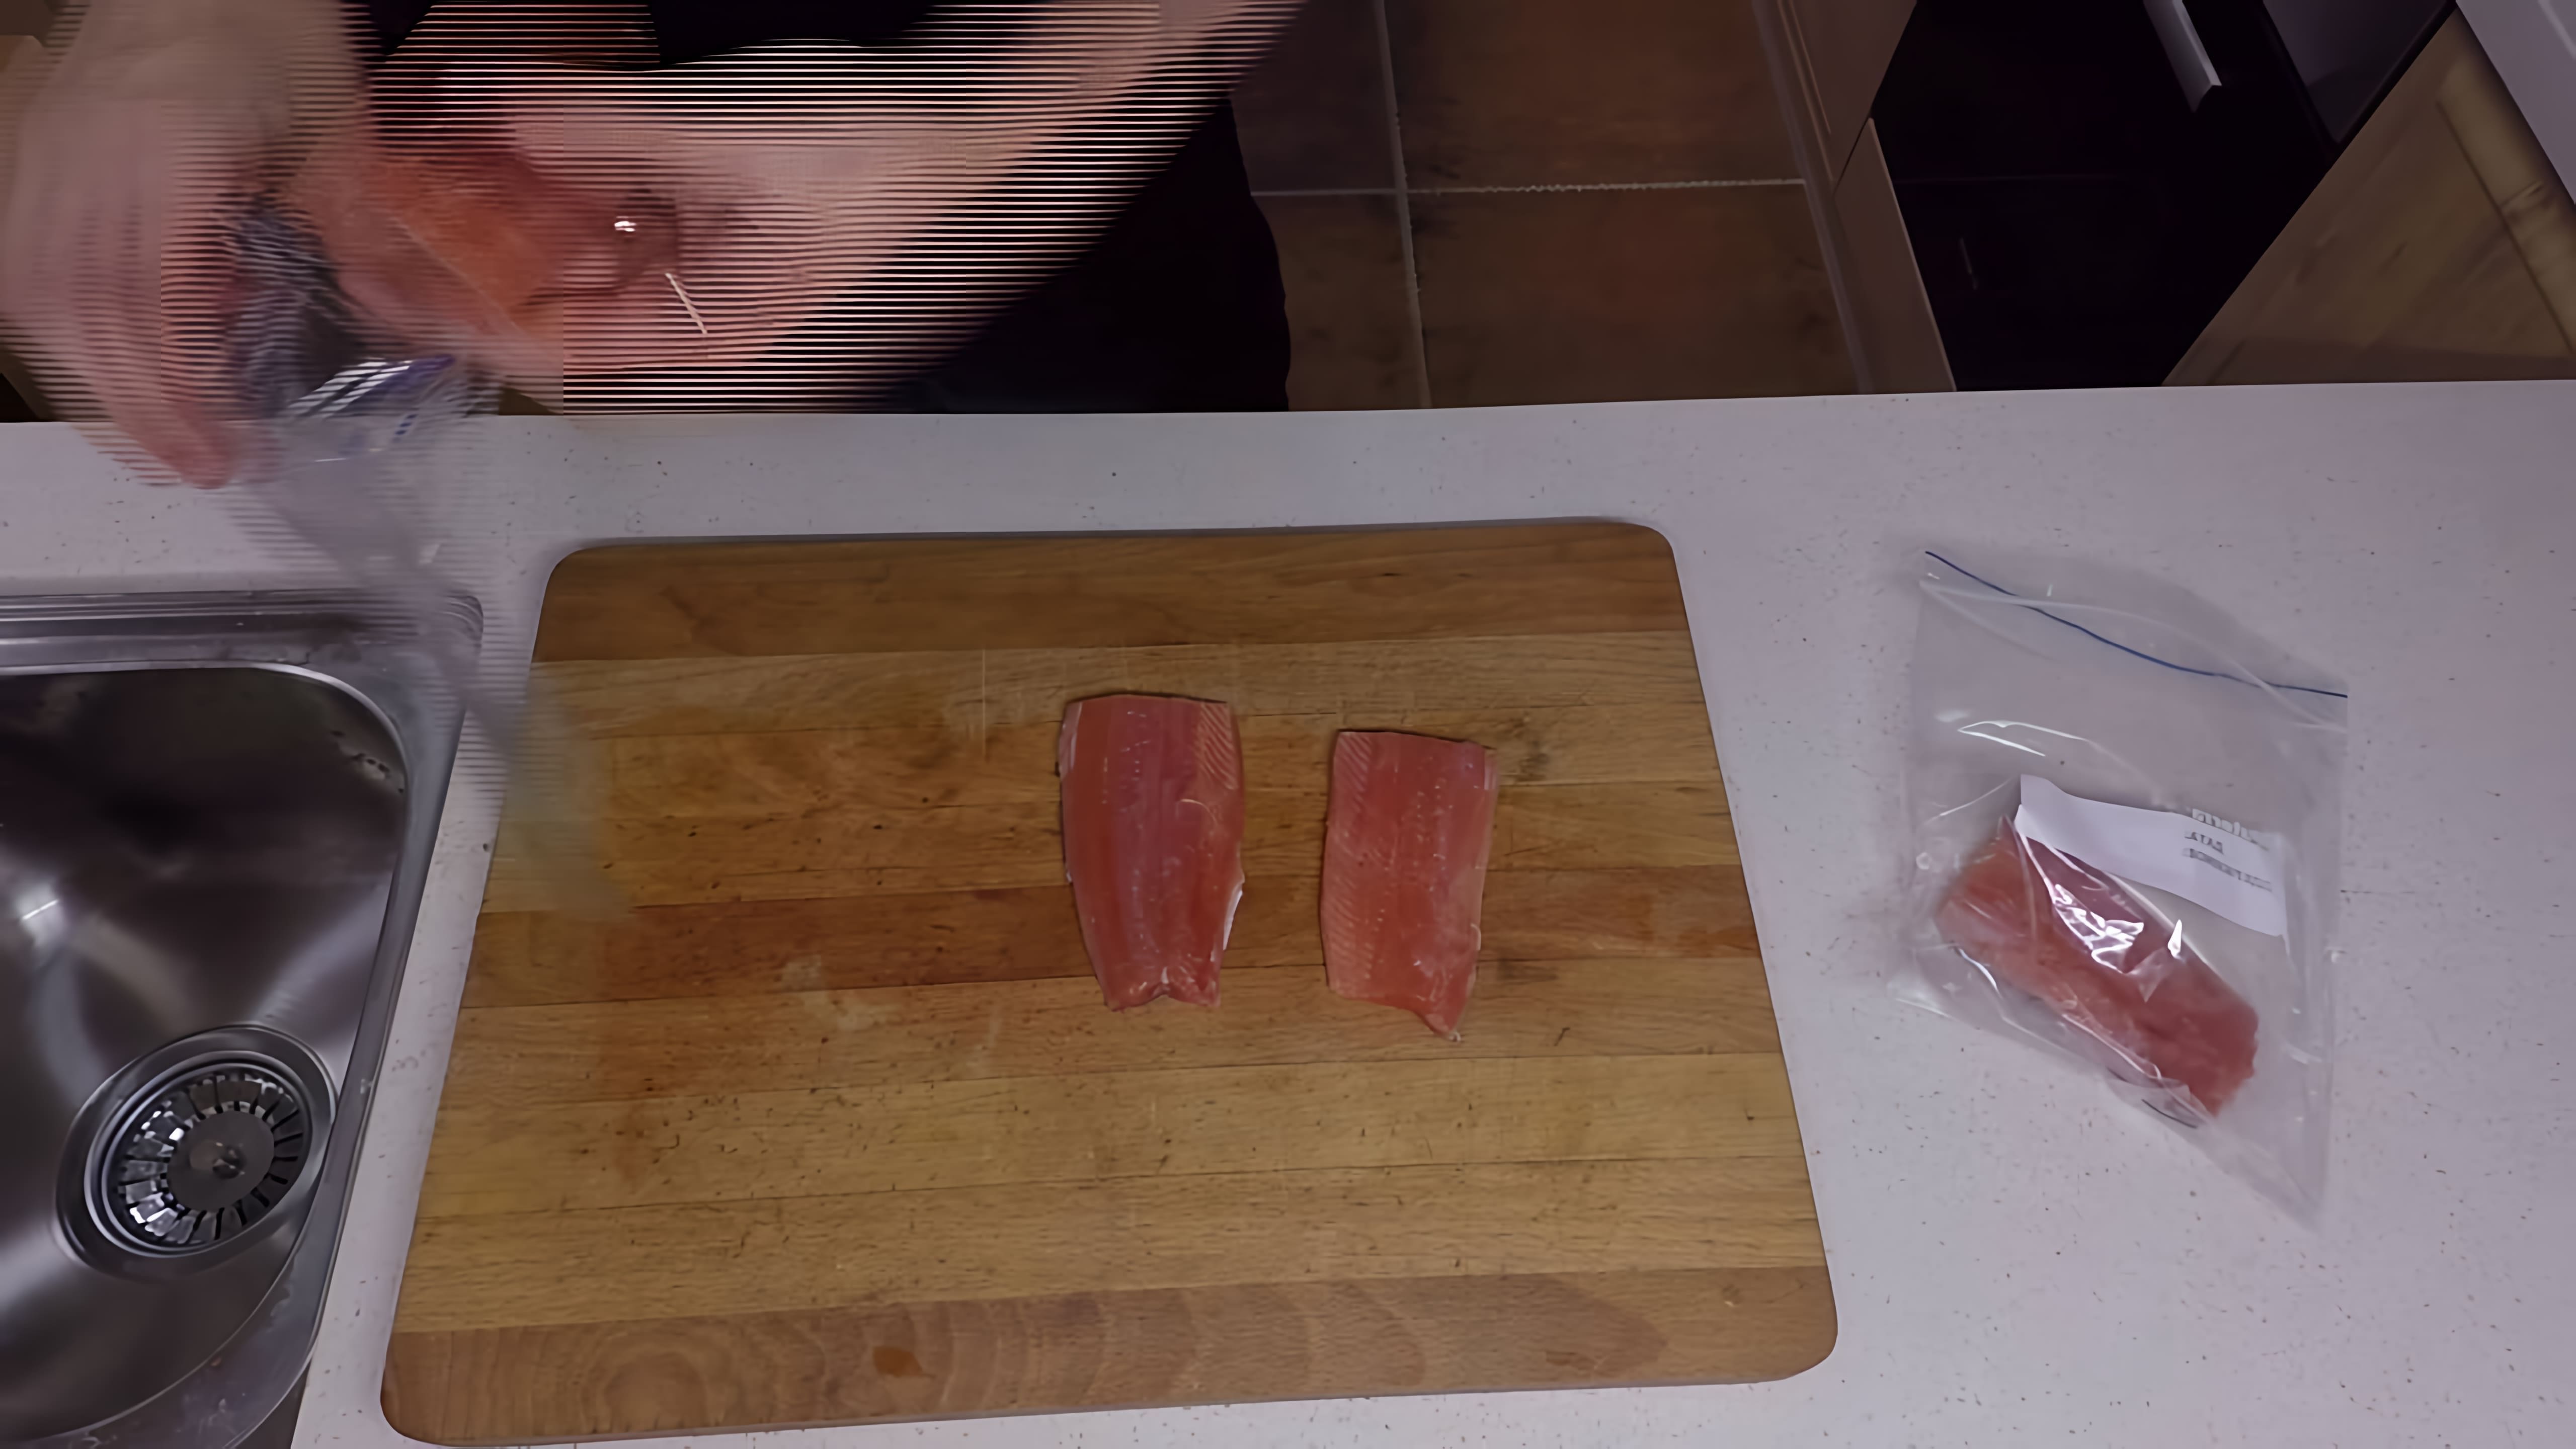 Горбуша Су-Вид - это видео-ролик, который демонстрирует процесс приготовления рыбы горбуши в вакуумной упаковке